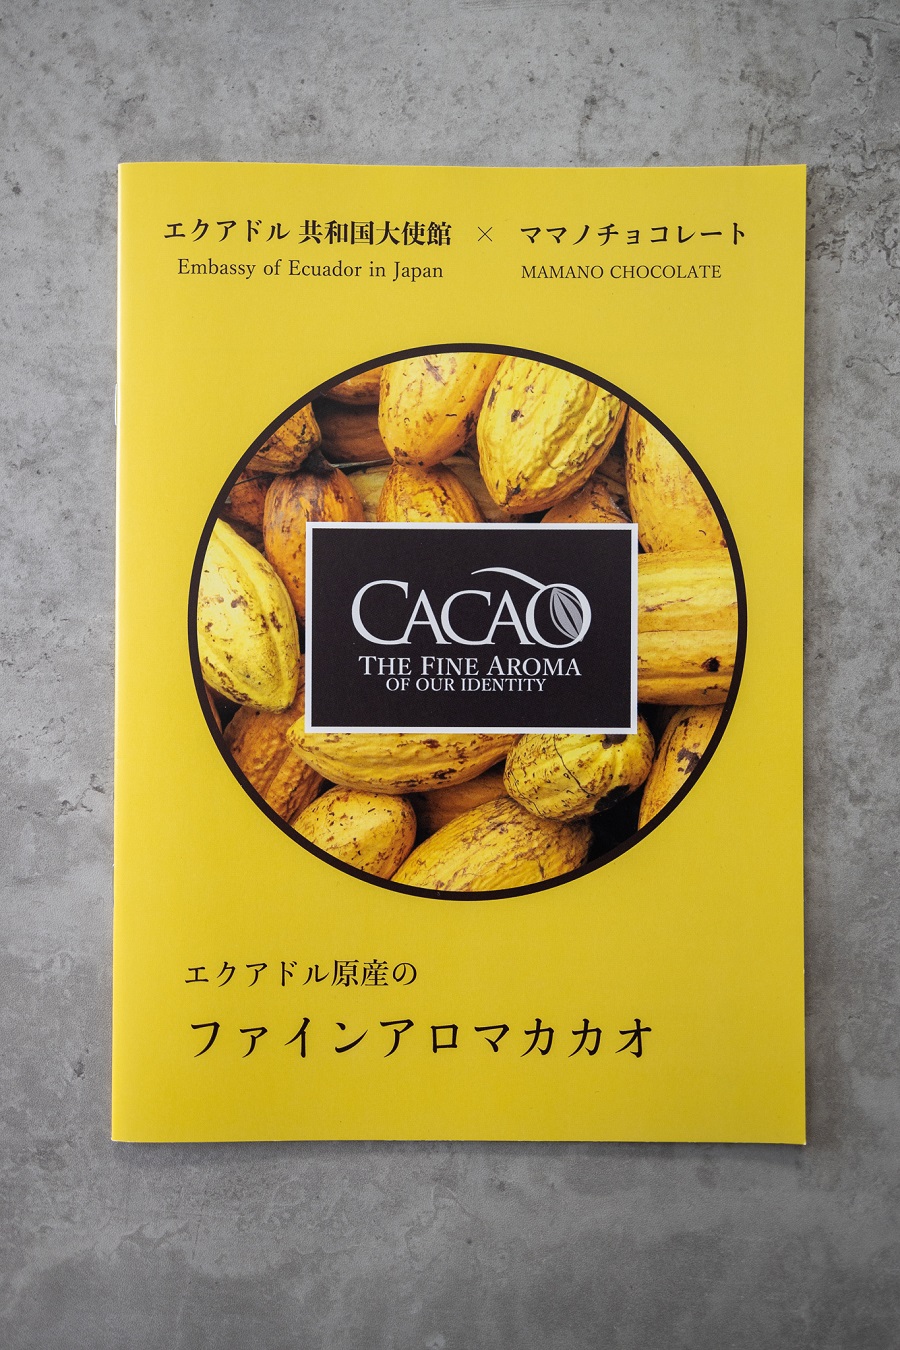 Ambassador of Ecuador to Japan Ecuador Fine Aroma Cacao